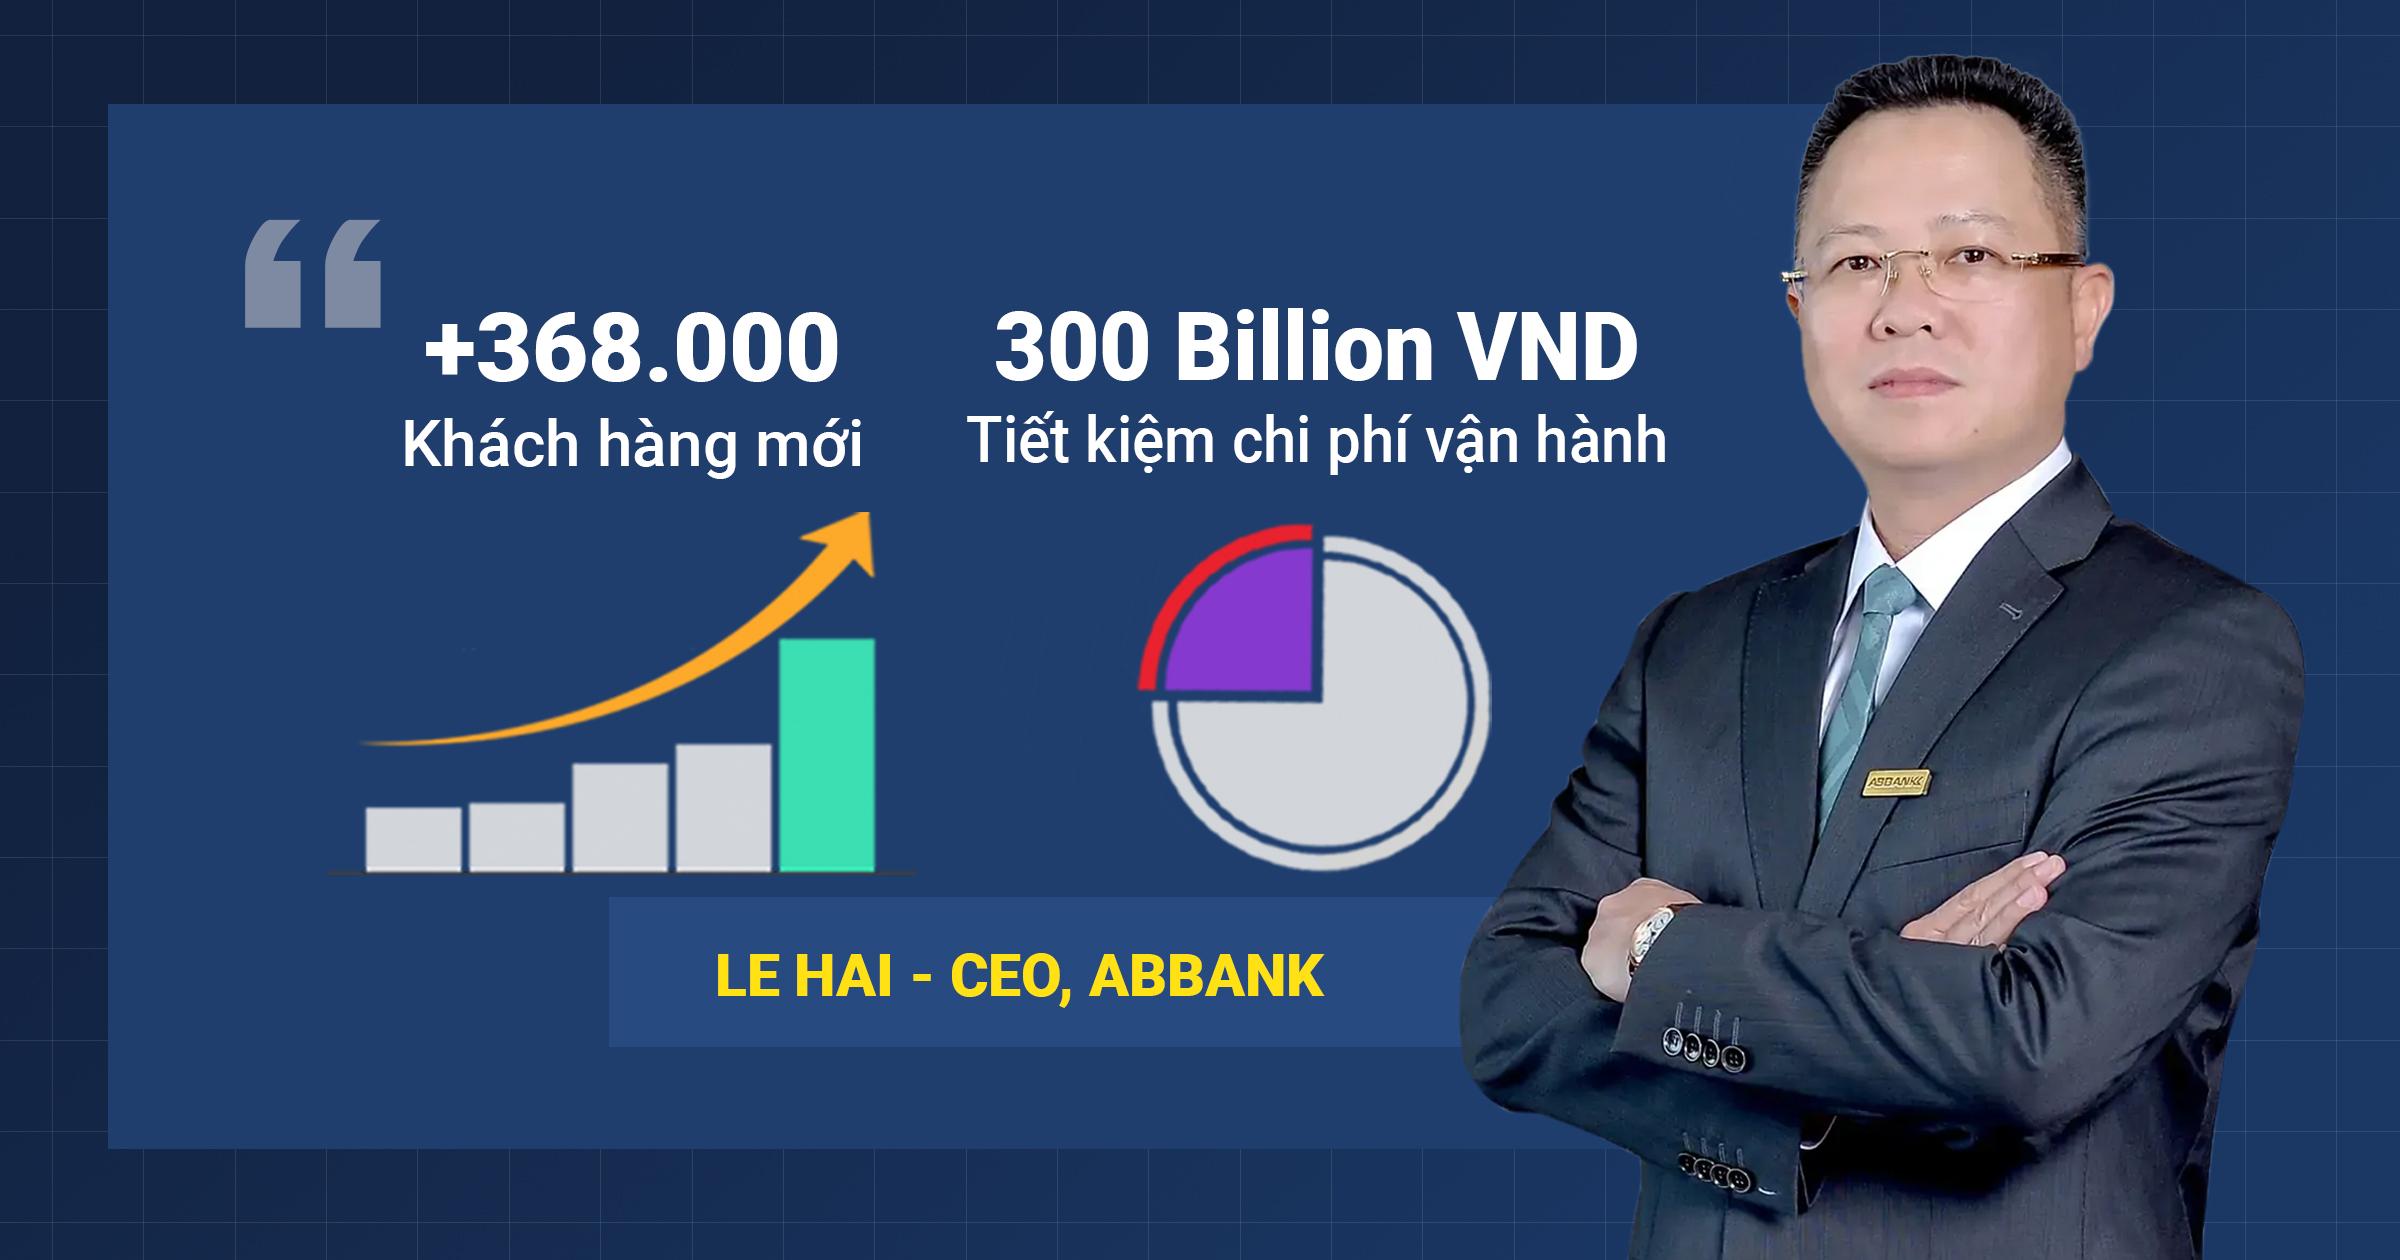 CEO Lê Hải đánh giá cao ứng dụng Smart Form